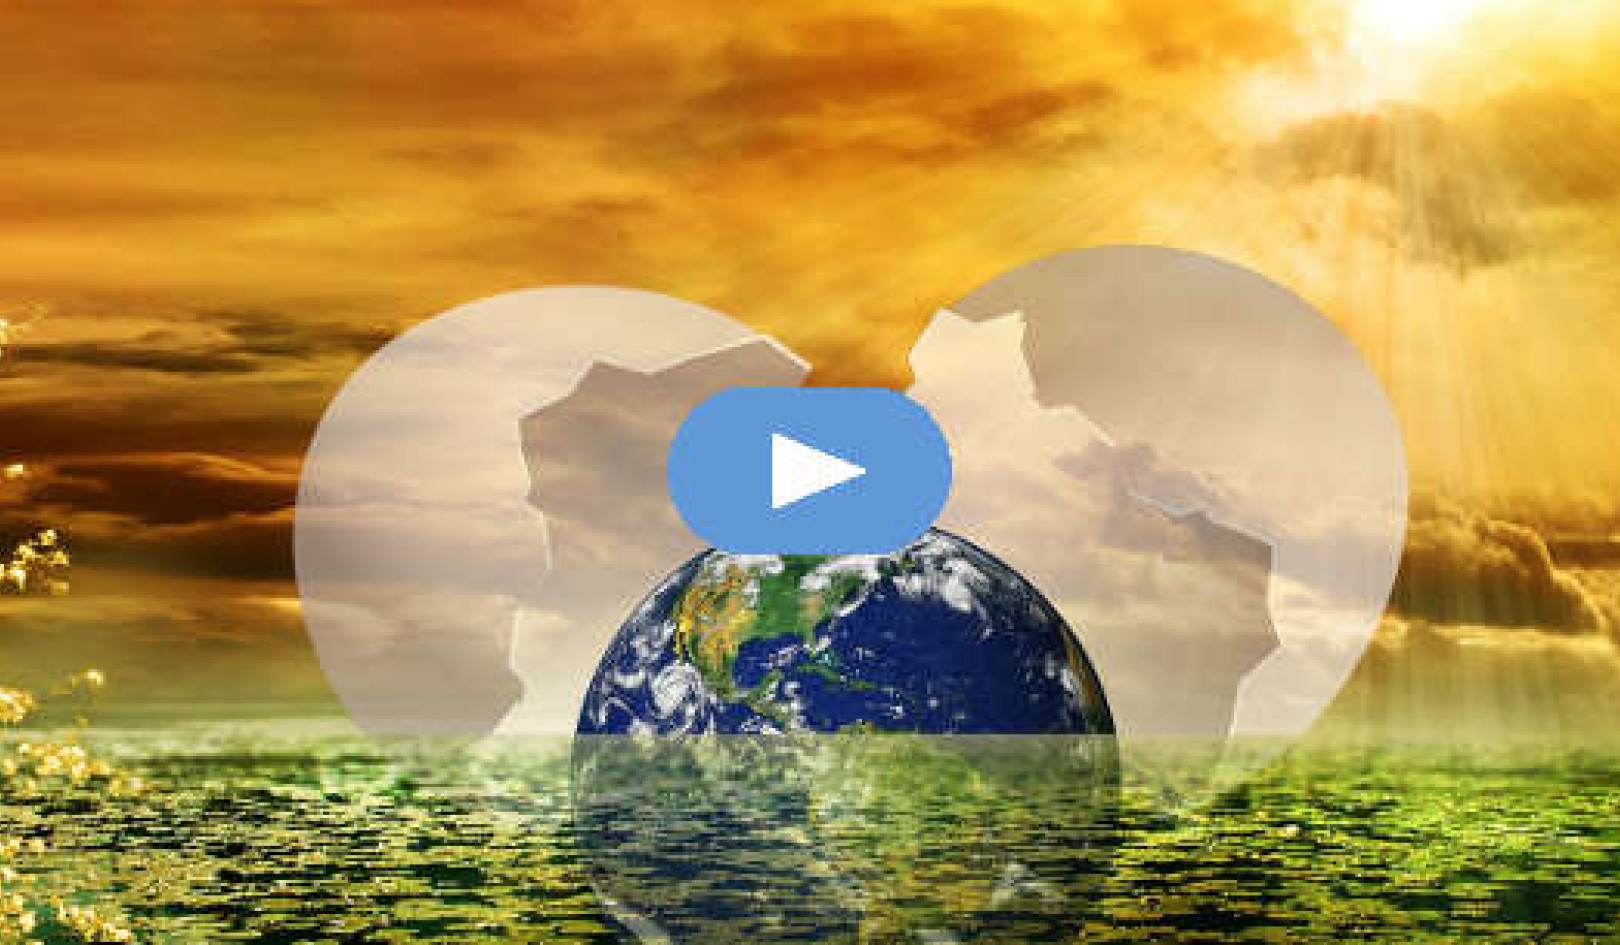 Kommer i balans i världarnas förändringar (video)